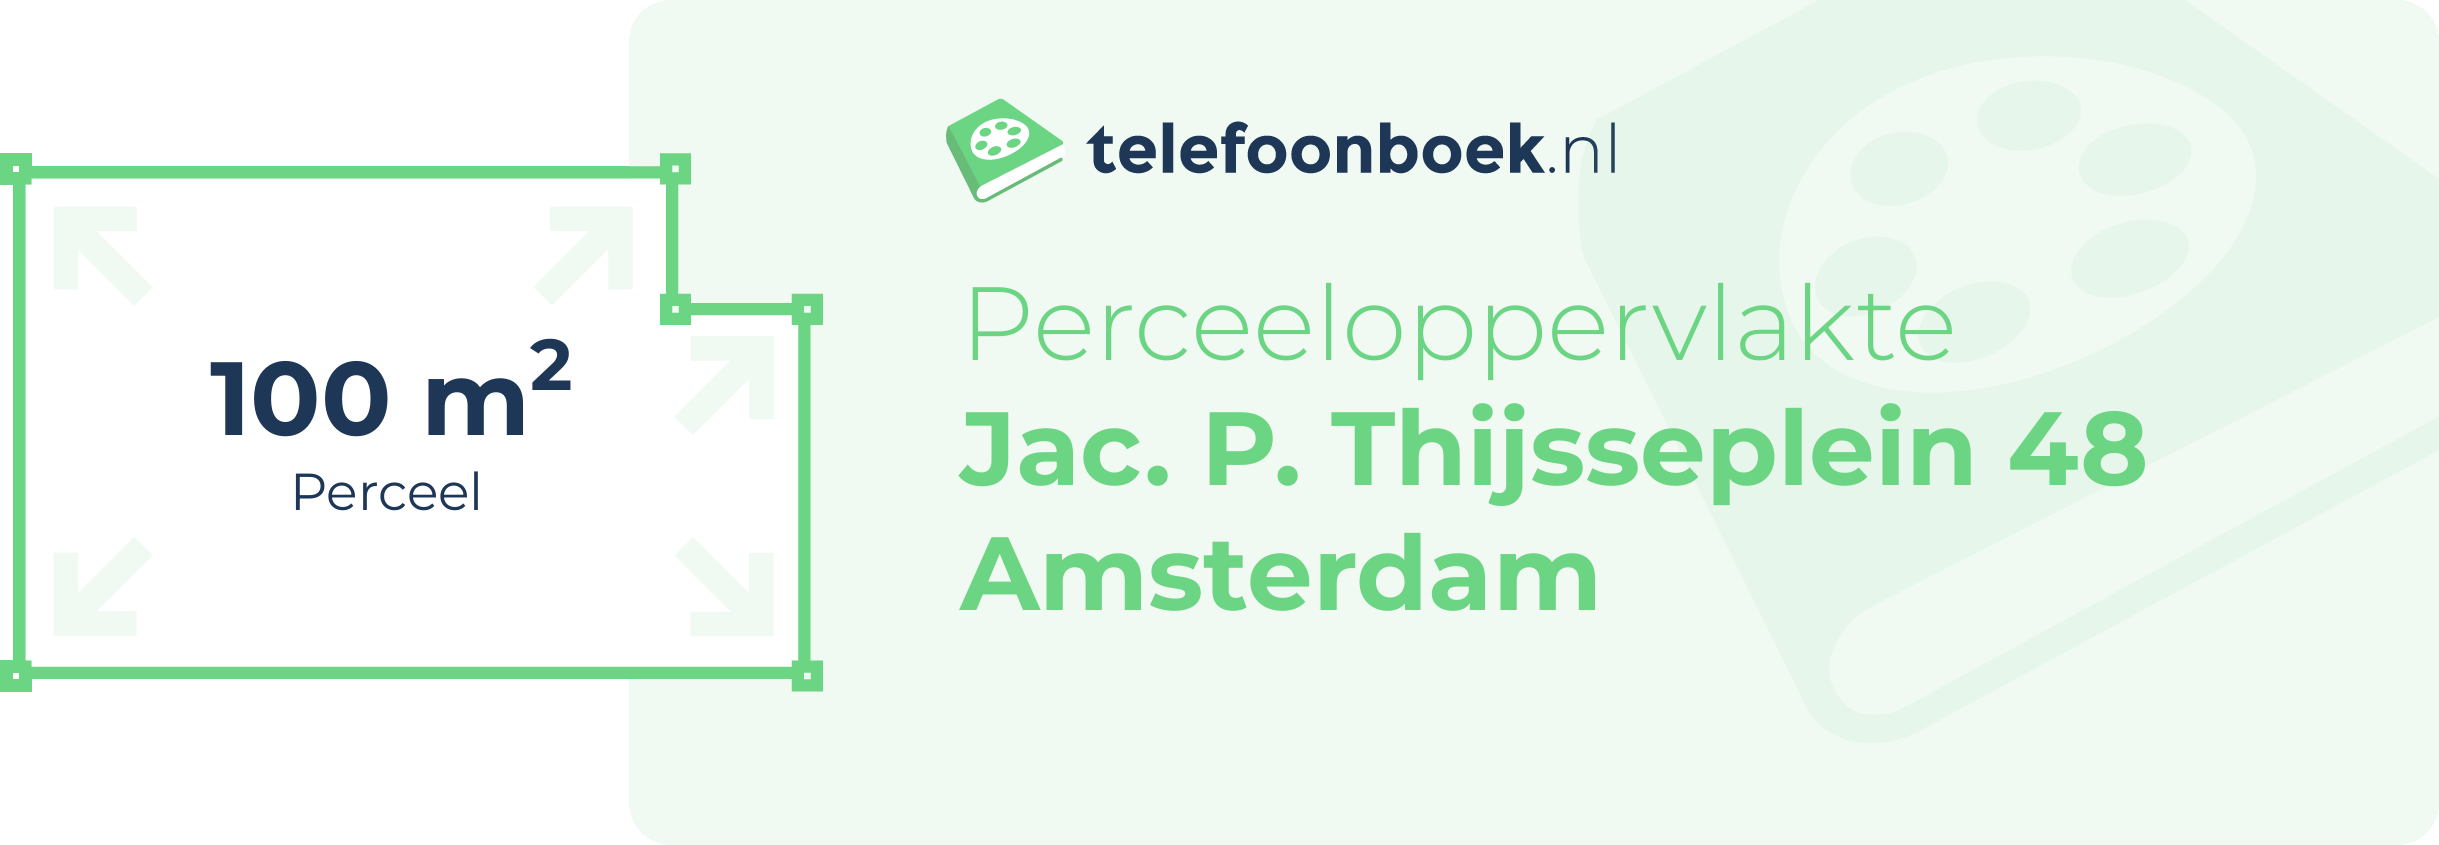 Perceeloppervlakte Jac. P. Thijsseplein 48 Amsterdam